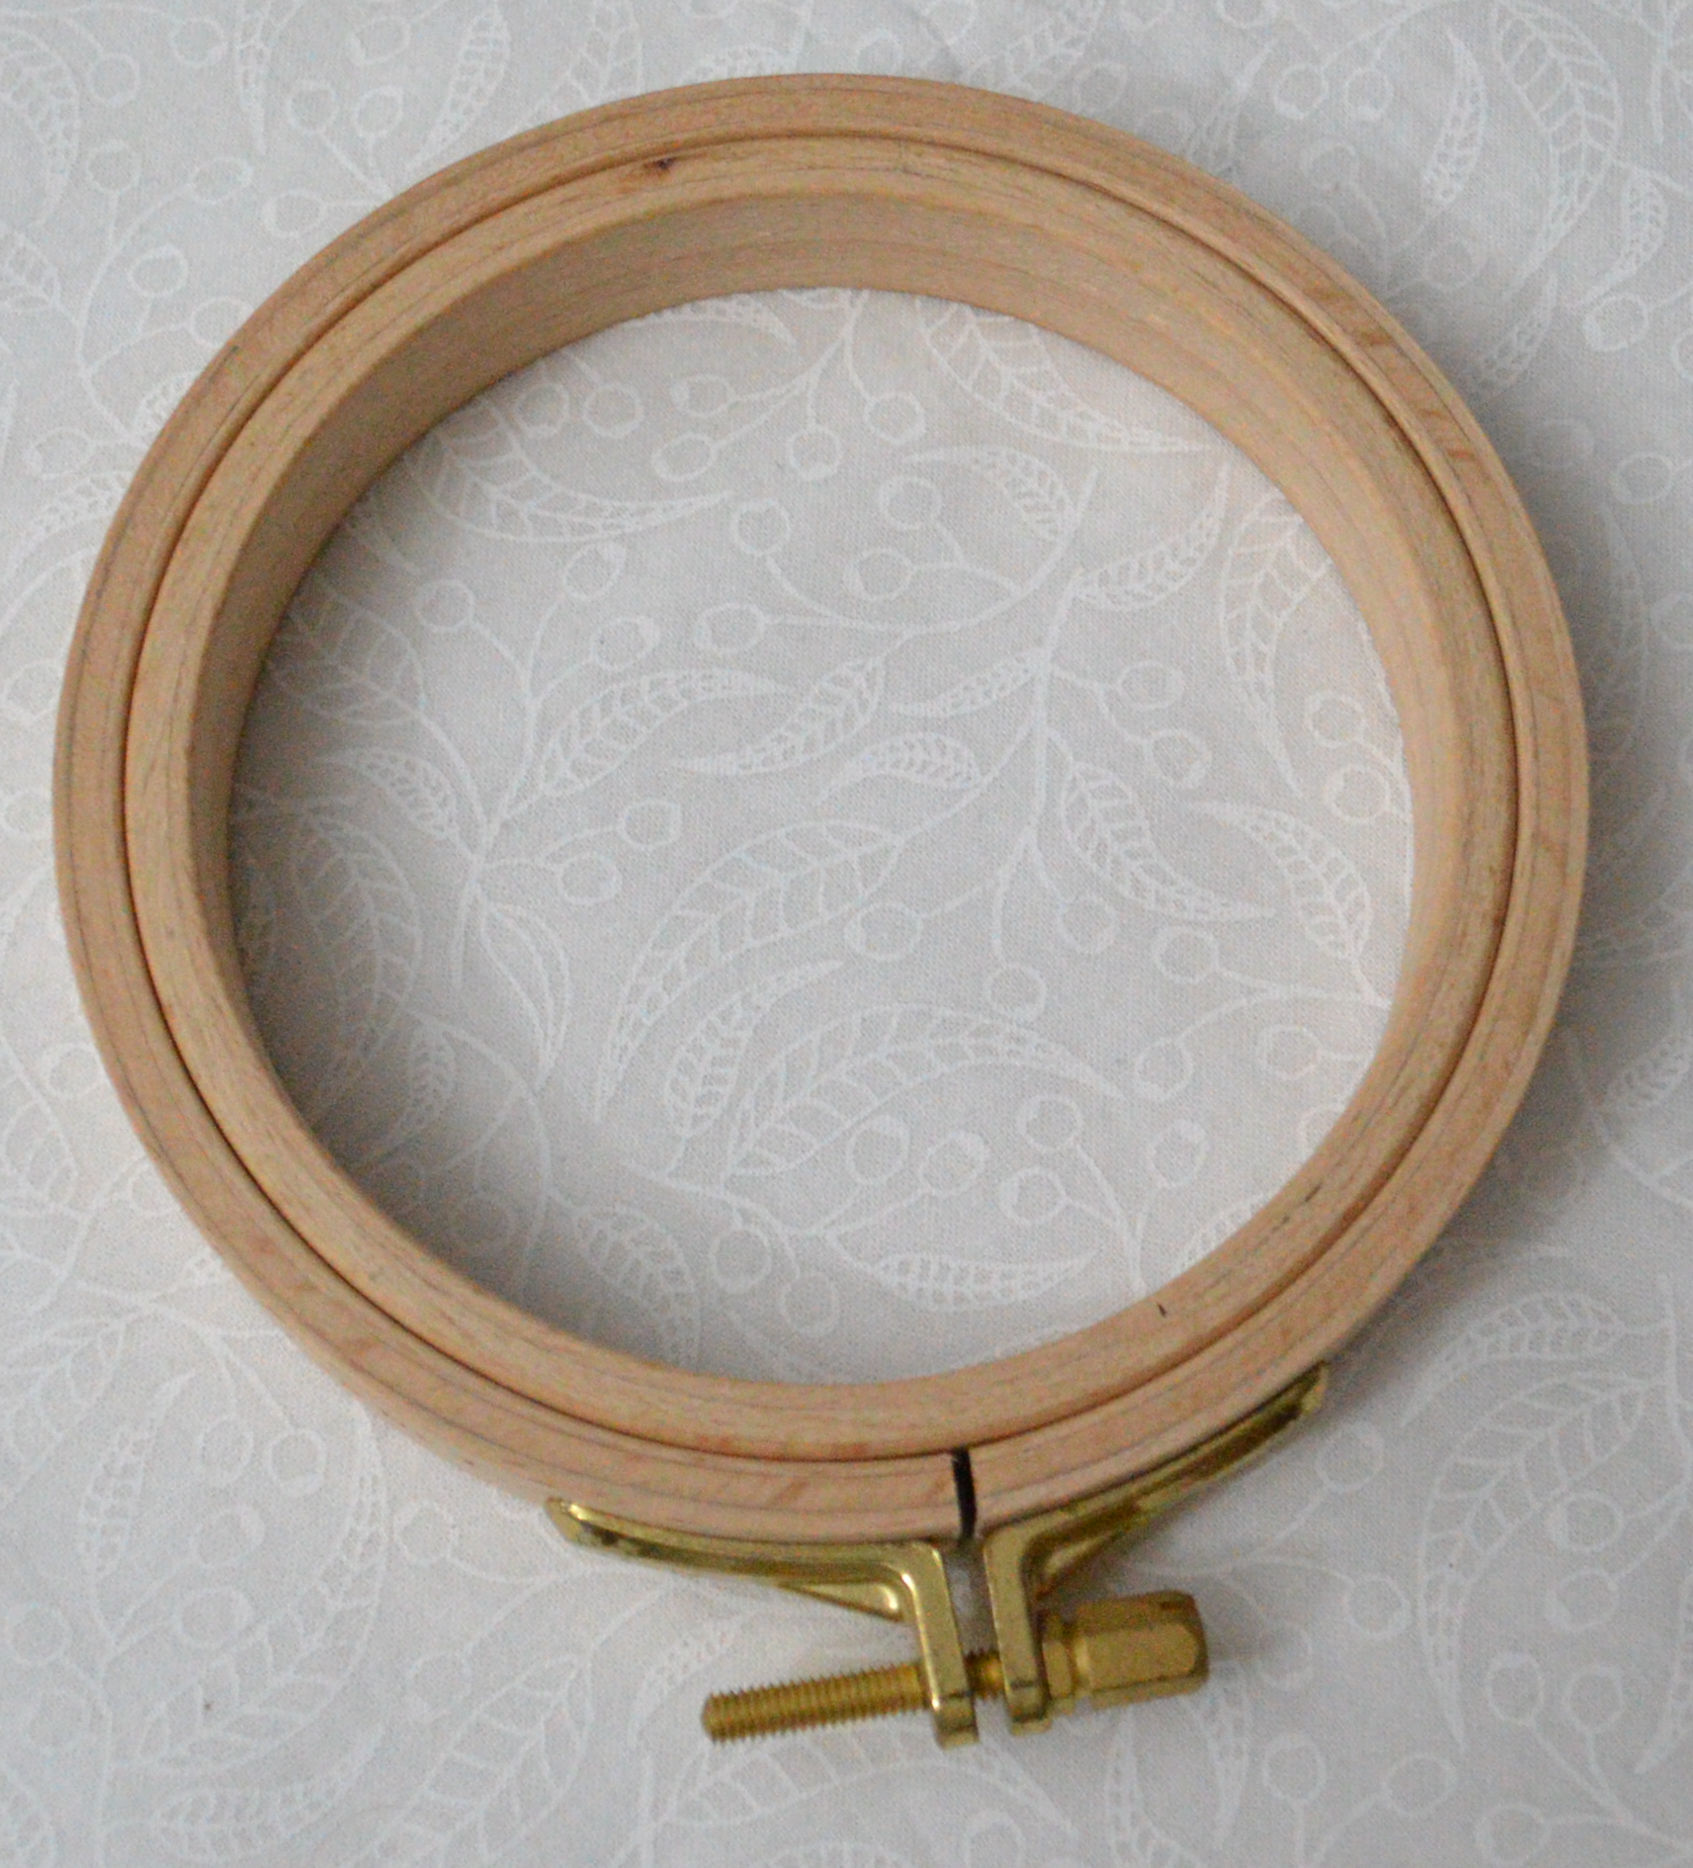 Nurge 16mm Screwed Wooden Embroidery Hoop in Brown | 9.84 | Michaels